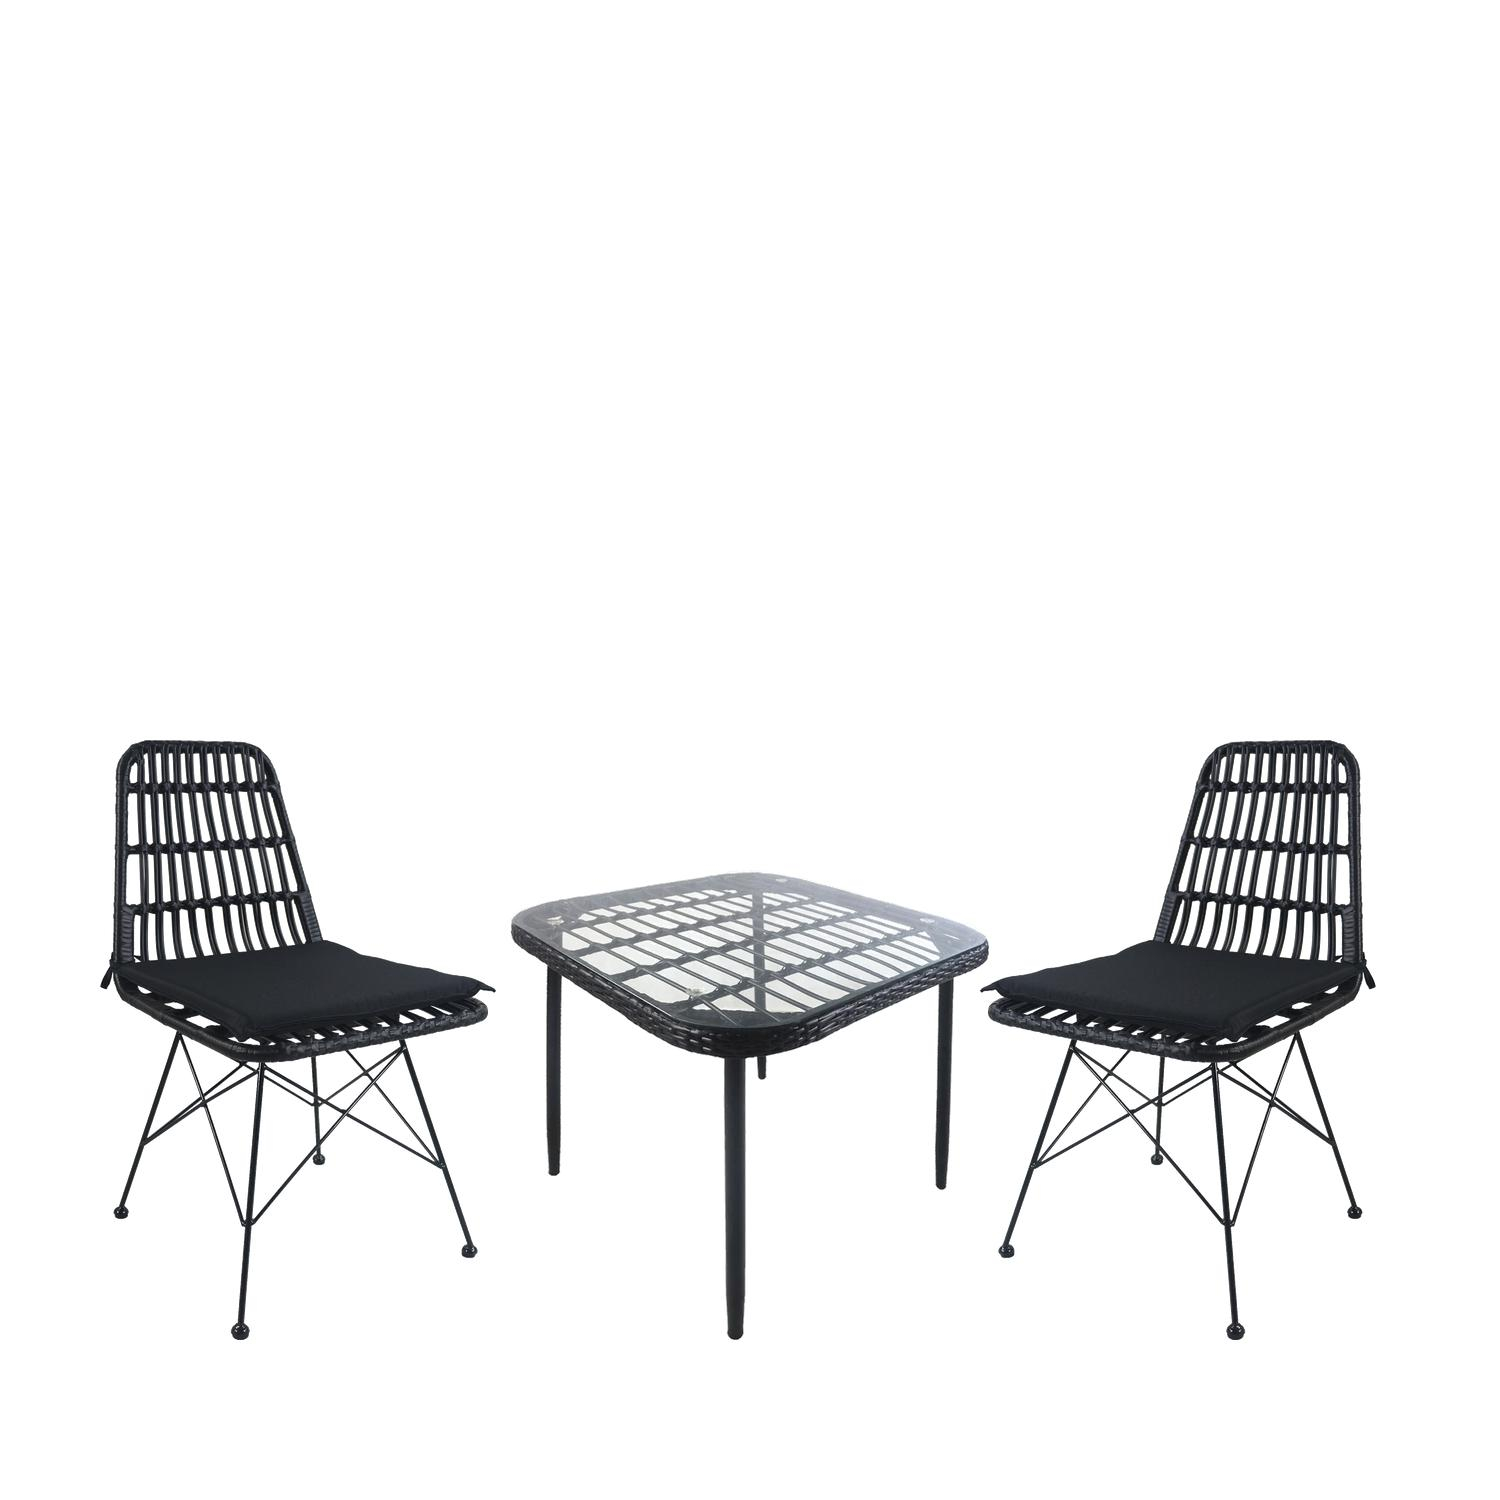 Σετ Τραπεζαρία Κήπου ANTIUS Μαύρο Μέταλλο/Rattan/Γυαλί Με 2 Καρέκλες 14990363